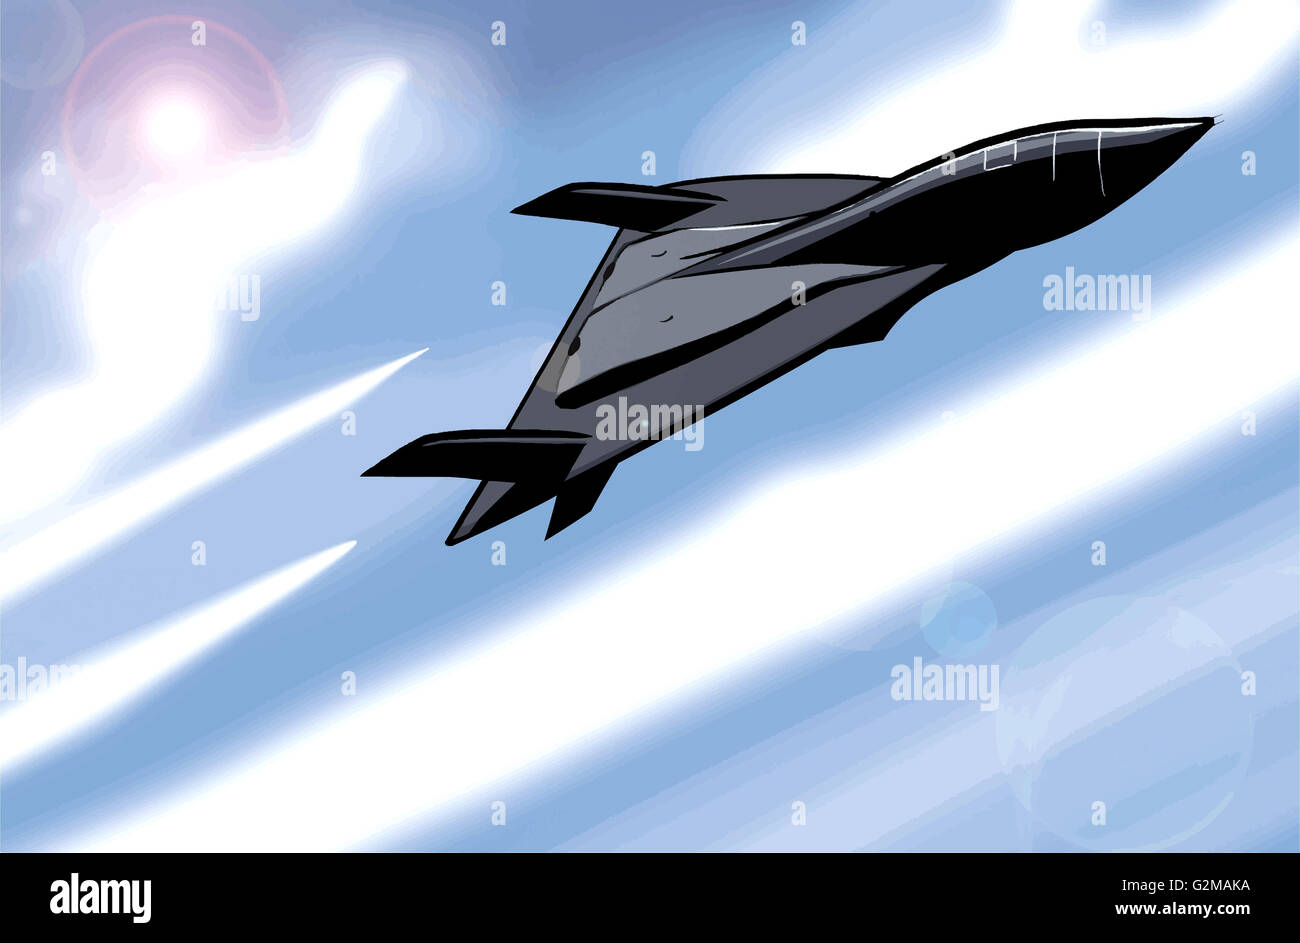 Black fighter plane in sky Stock Photo